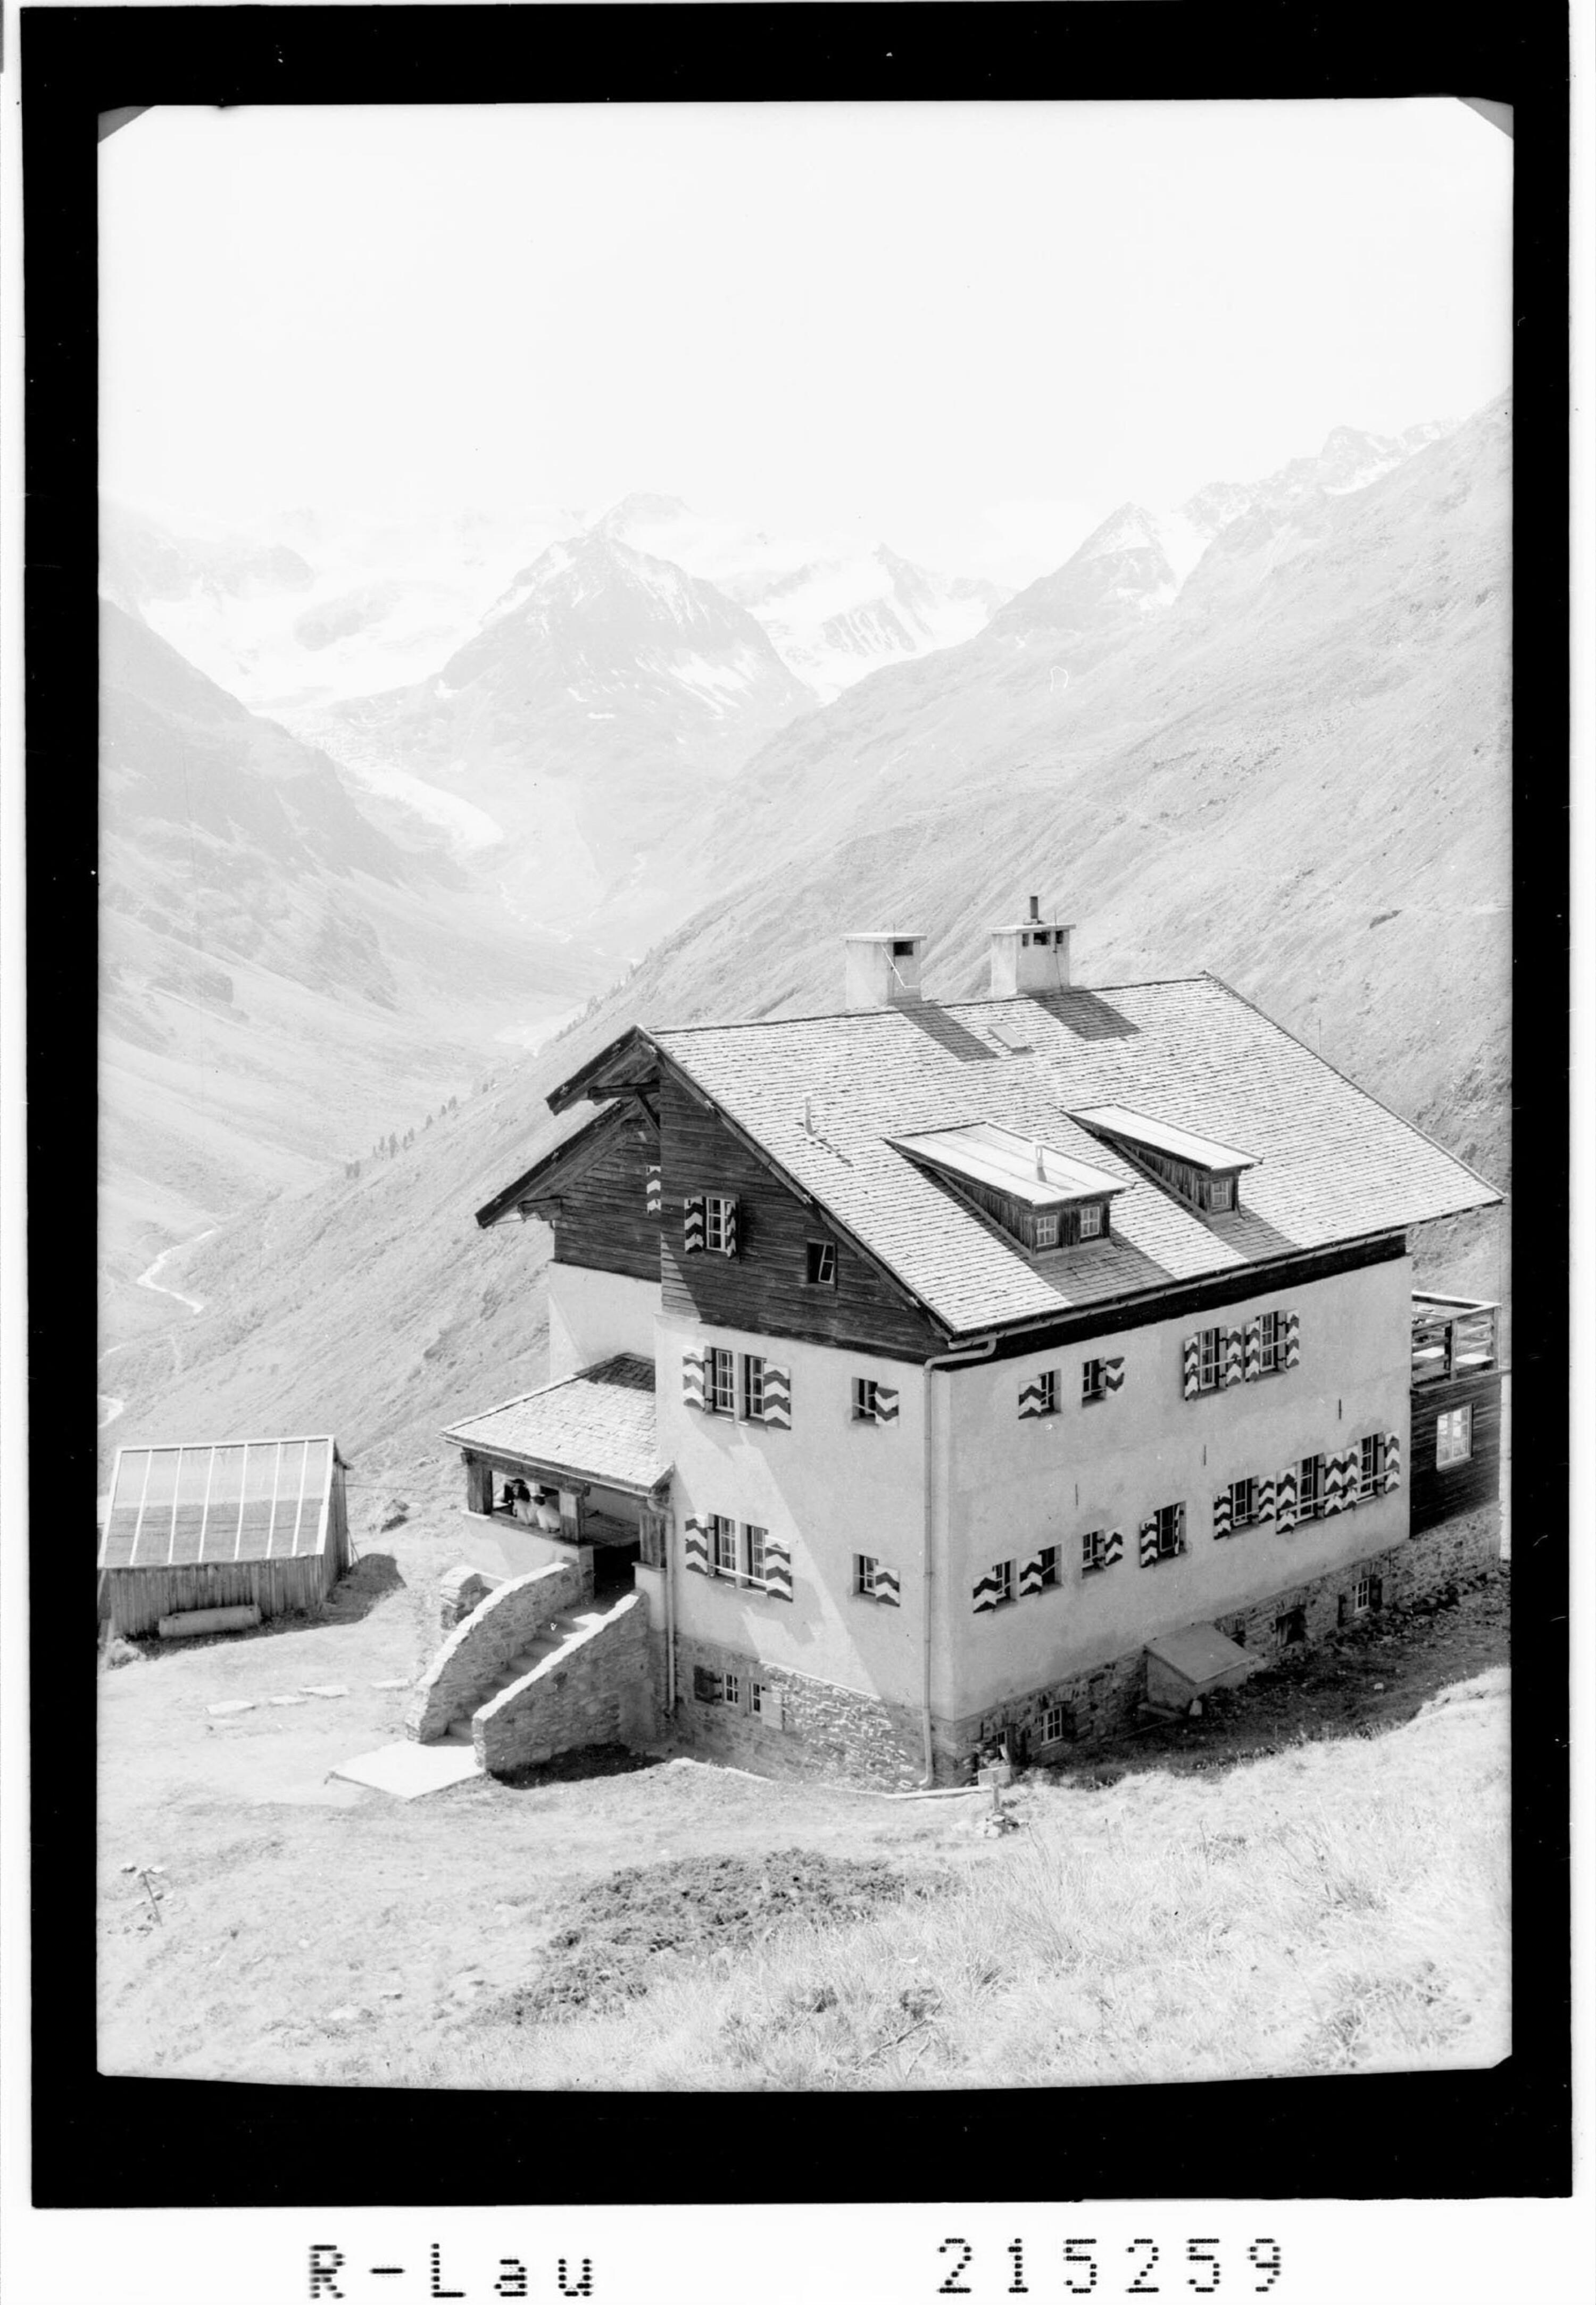 Riffelsee Hütte 2293 m gegen Taschachbruch, Pitztal / Tirol></div>


    <hr>
    <div class=